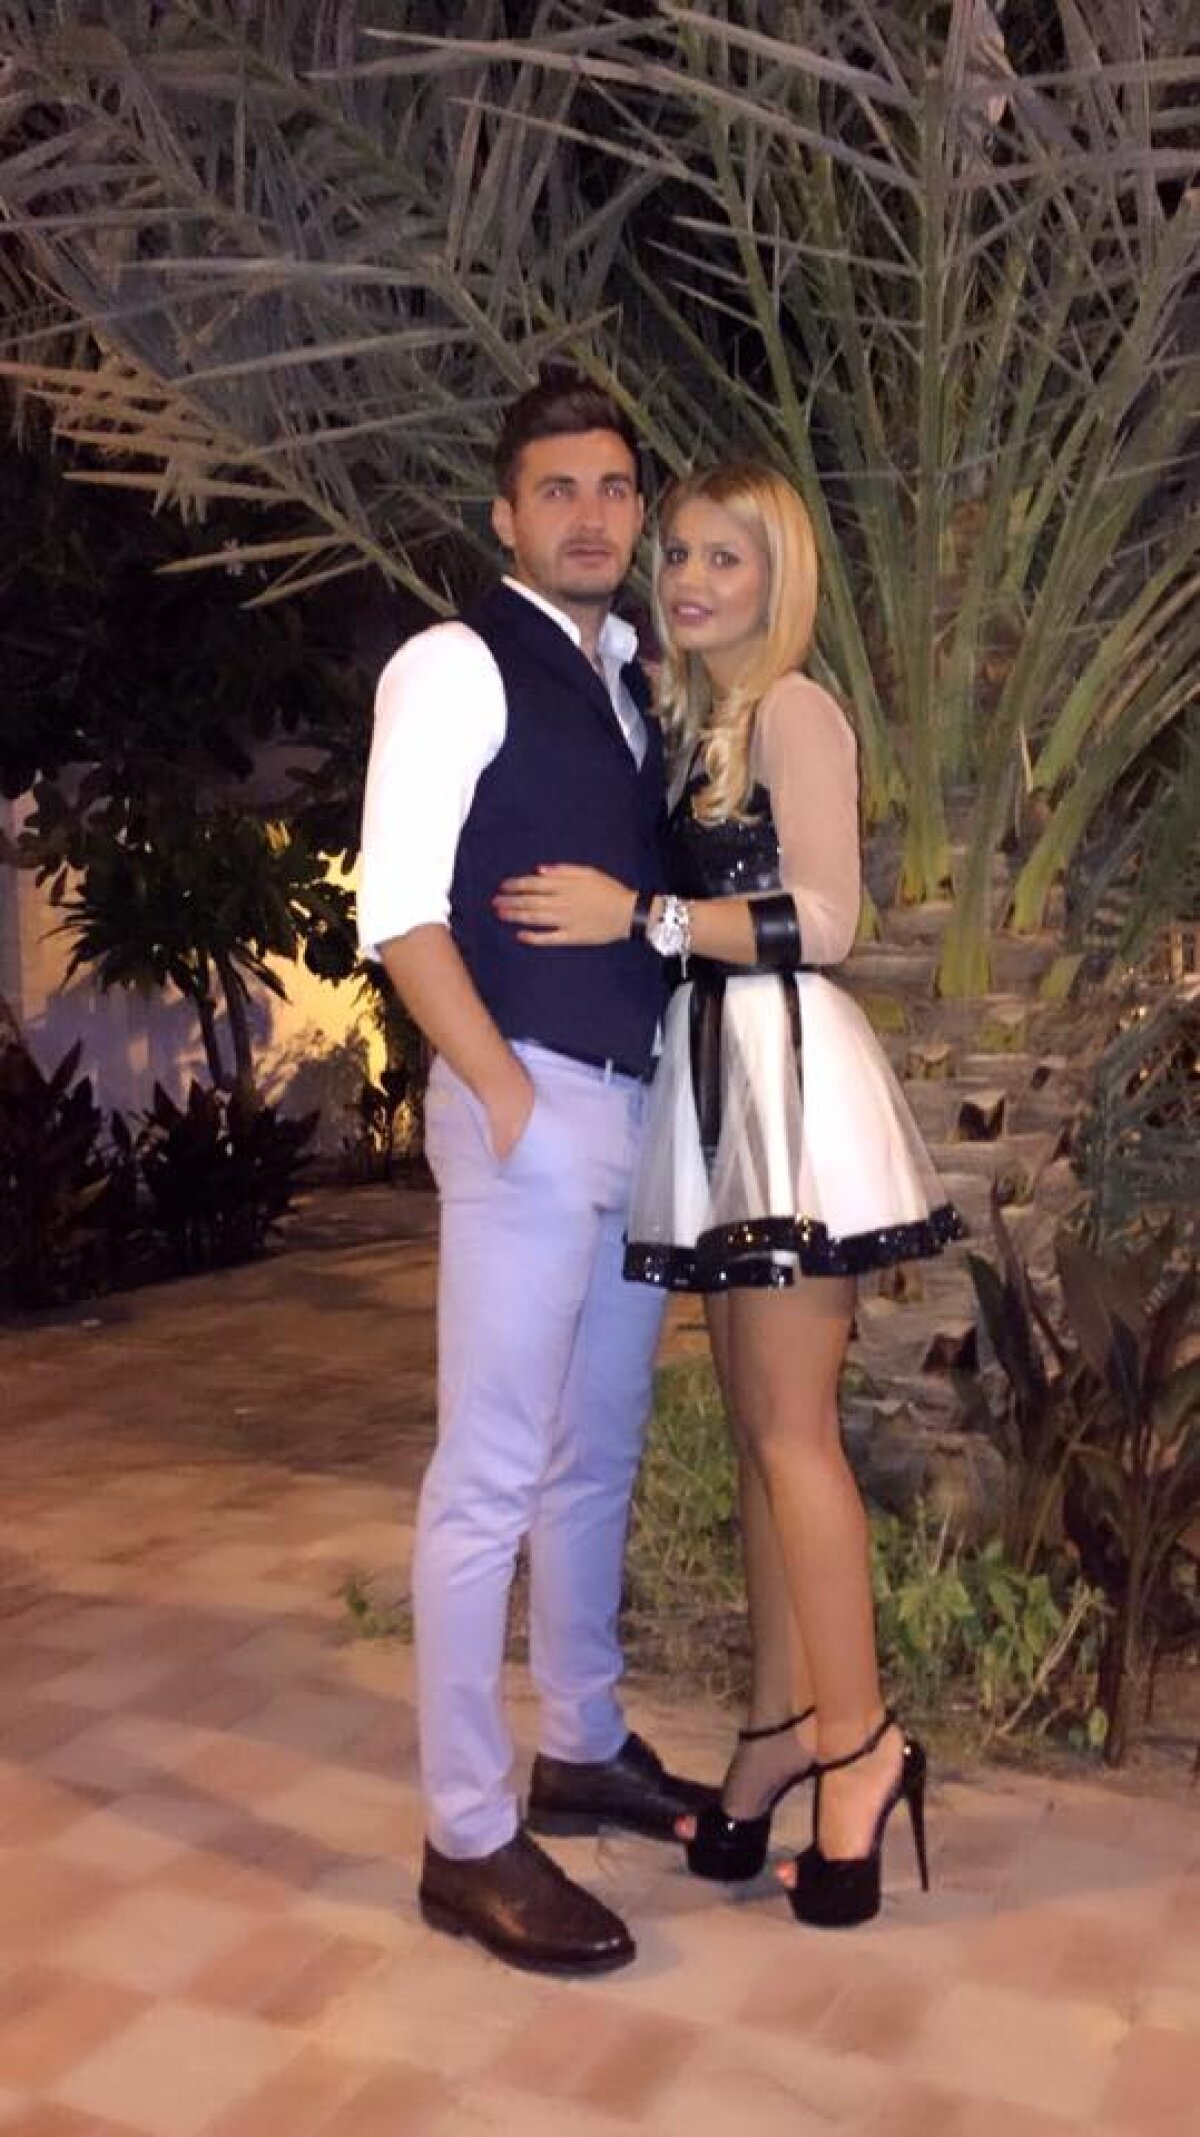 GALERIE FOTO Stelistul Filip și-a dus iubita în vacanță în Dubai! Imagini de senzație cu femeia care i-a luat mințile mijlocașului campioanei